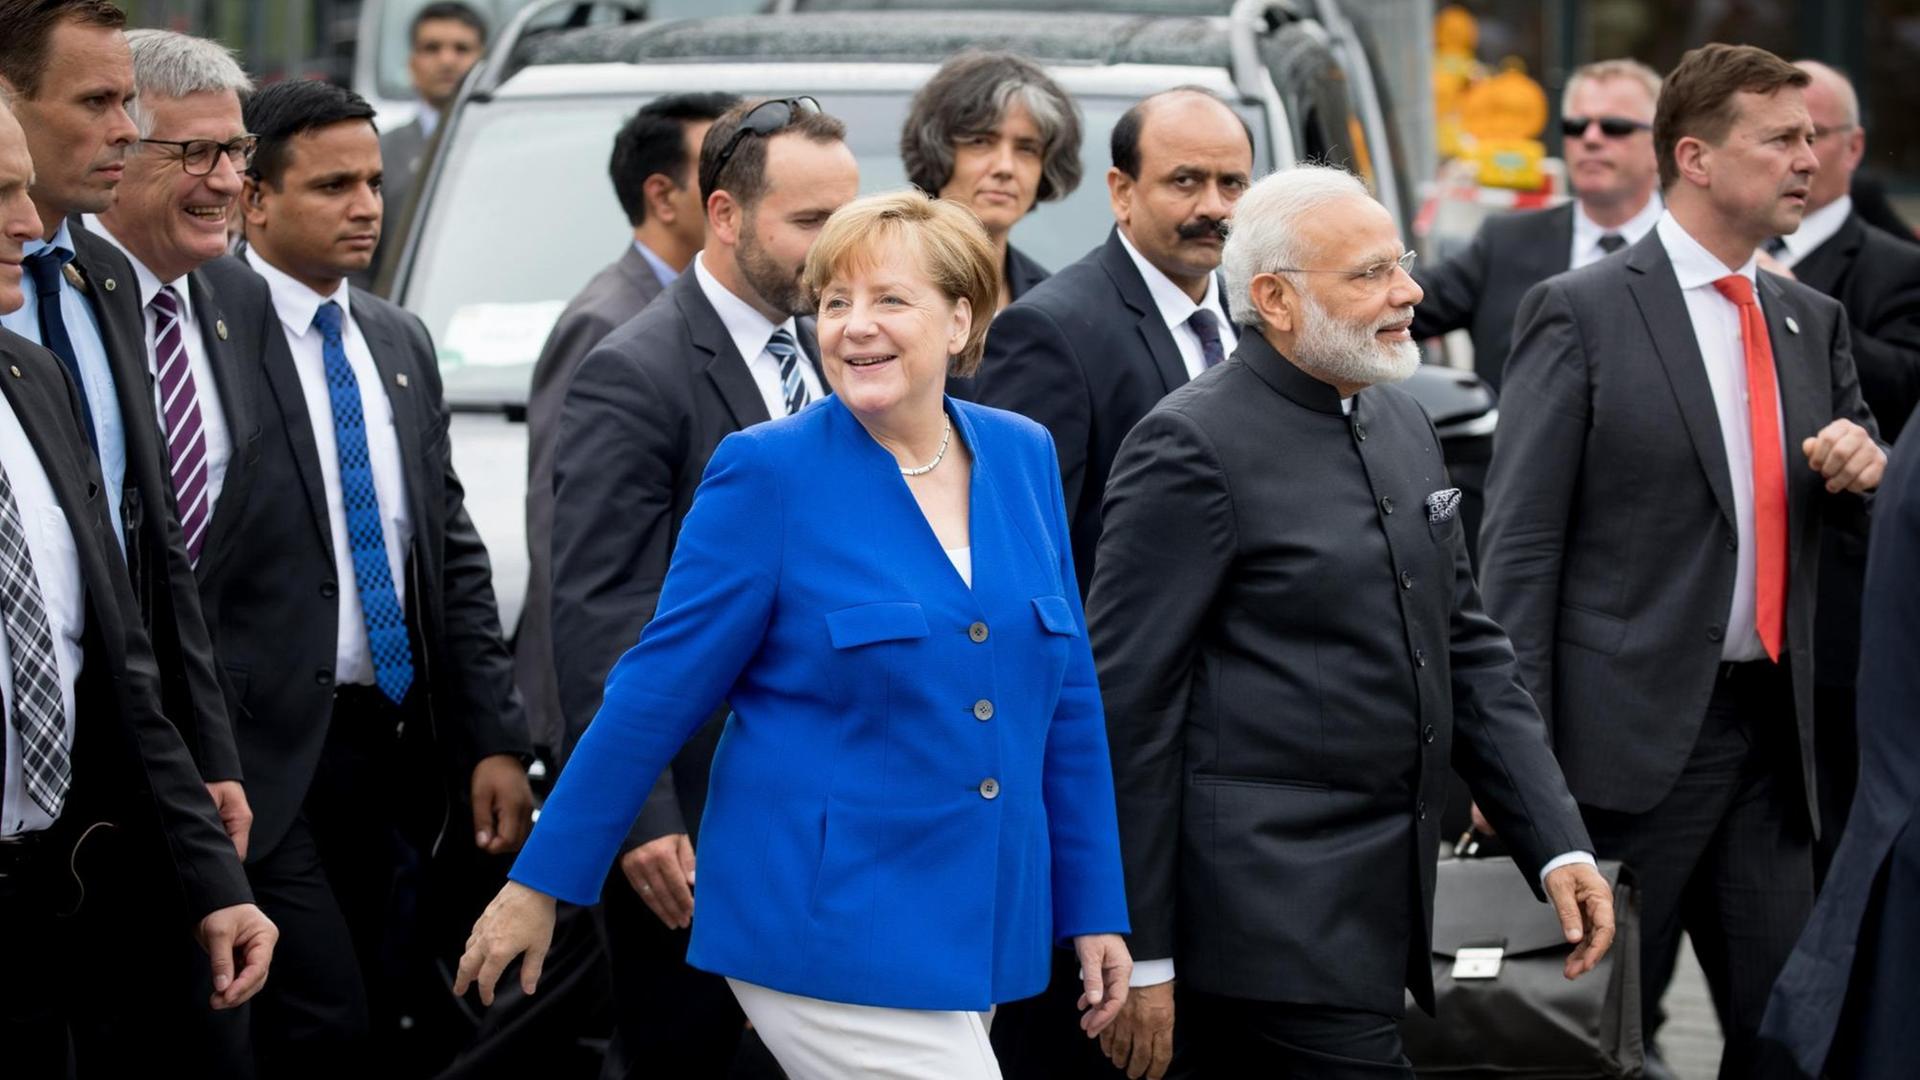 Bundeskanzlerin Angela Merkel (CDU) und der indische Premierminister Narendra Modi gehen am 30.05.2017 in Berlin nach den deutsch-indischen Regierungskonsultationen über den Pariser Platz zum Brandenburger Tor.